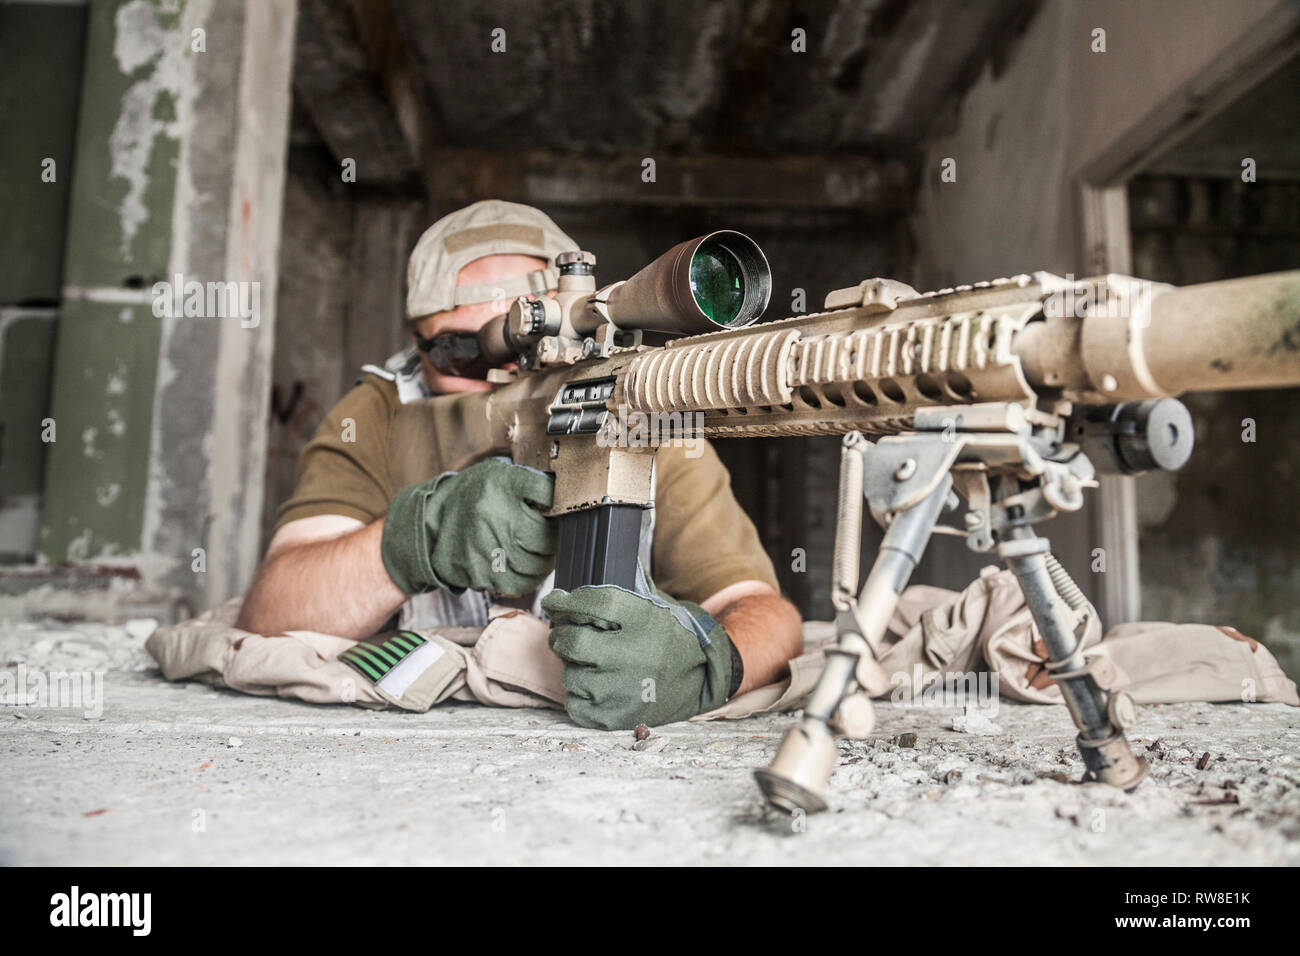 Navy Seal Sniper Mit Gewehr In Aktion Stockfotografie Alamy